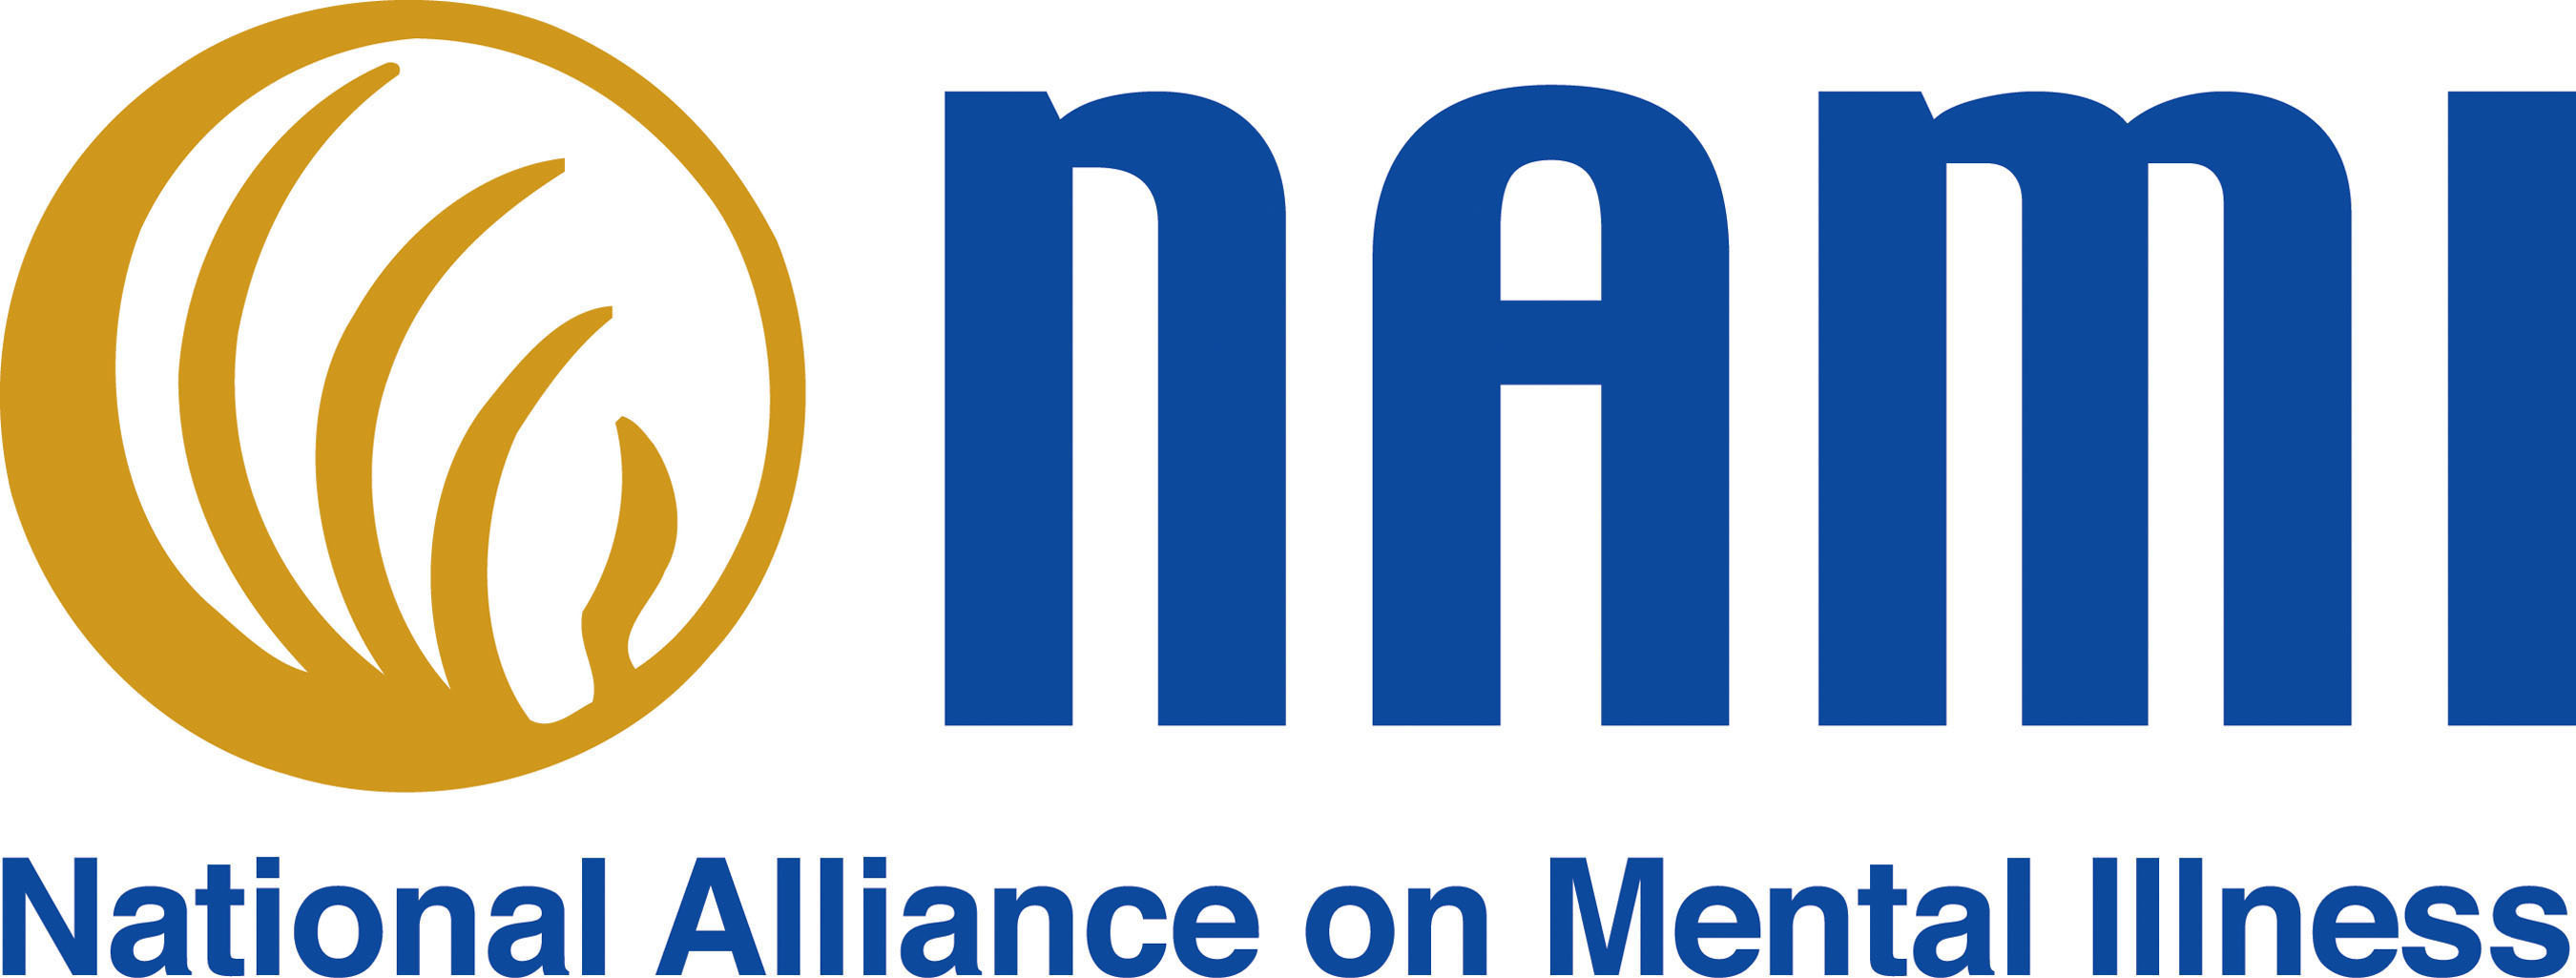 NAMI Logo